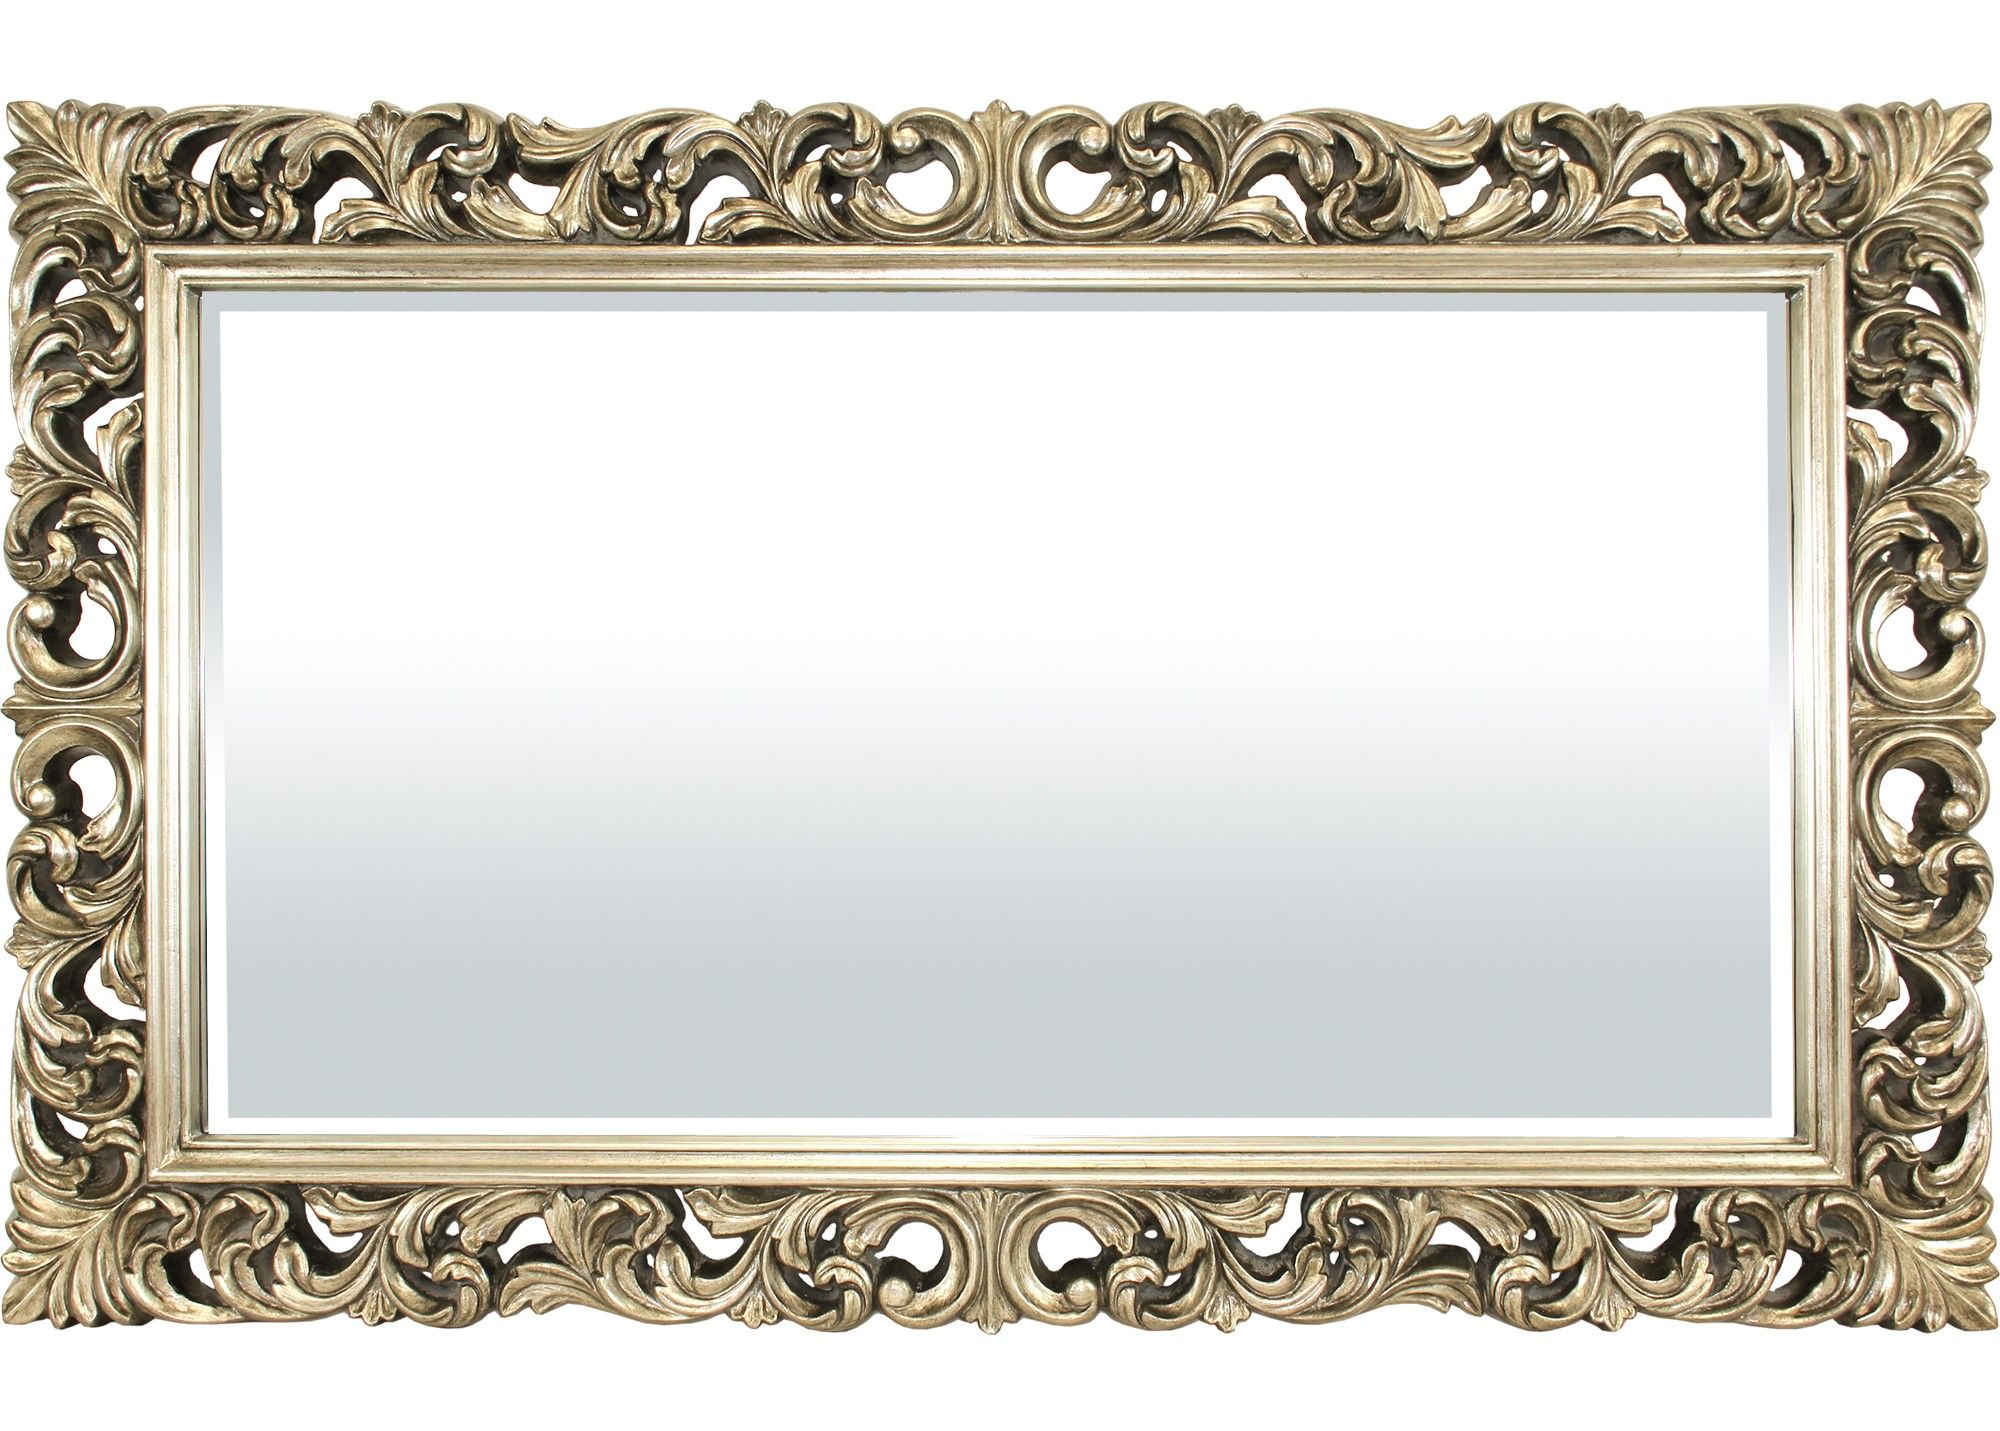 Zlaté zrcadlo s ornamenty 101804 Mdum - M DUM.cz